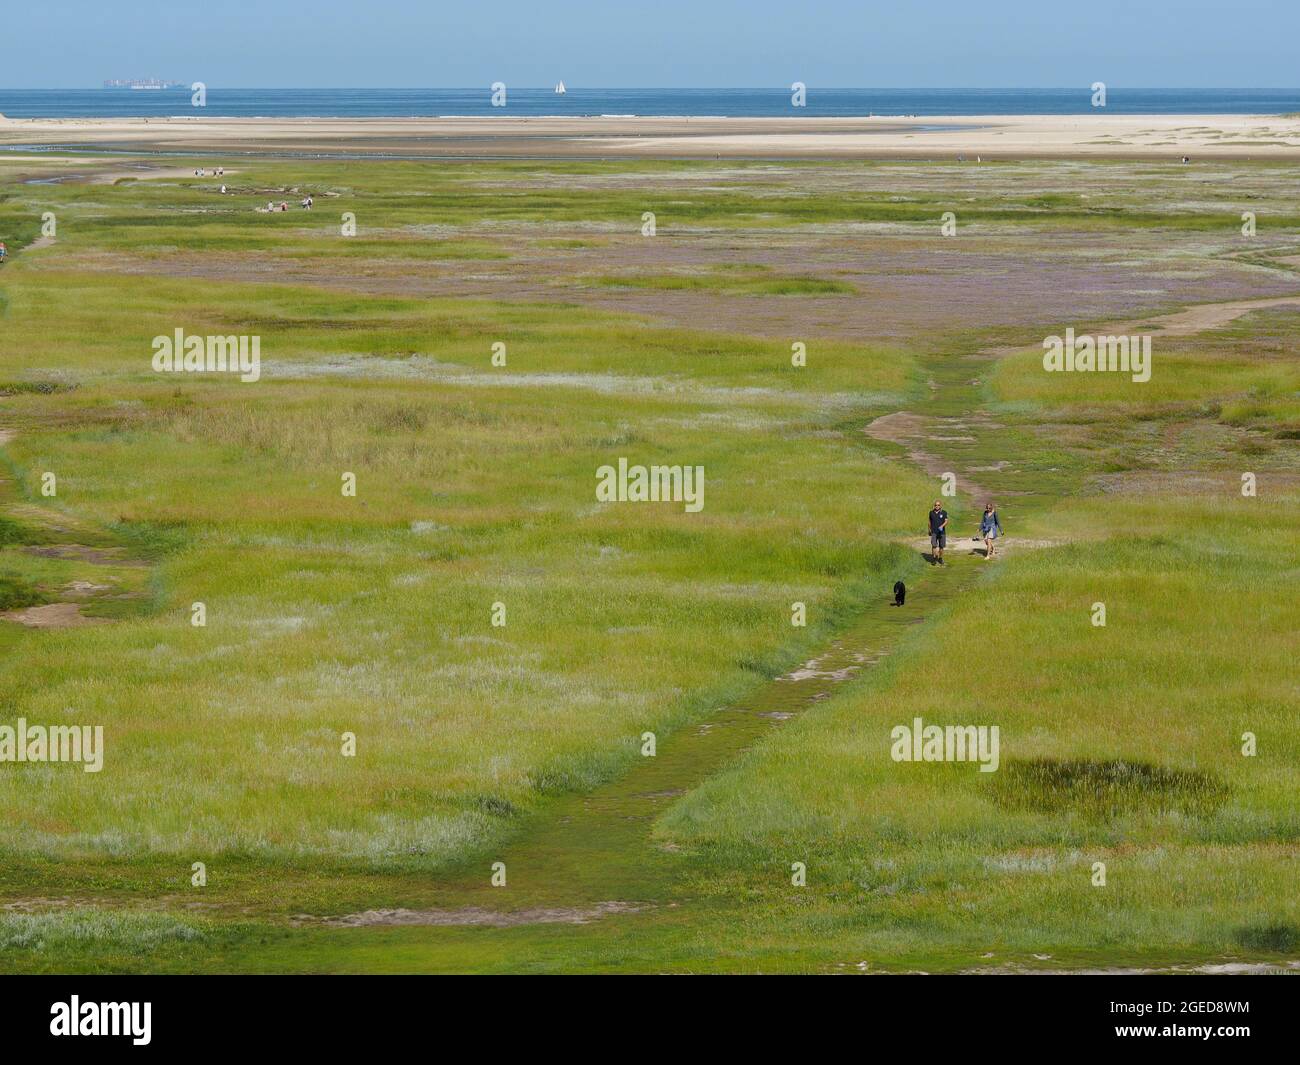 Il parco naturale Slufter sull'isola di Texel è un ambiente molto speciale; a causa del divario tra le dune, l'acqua salata trabocca regolarmente. Texel, Foto Stock